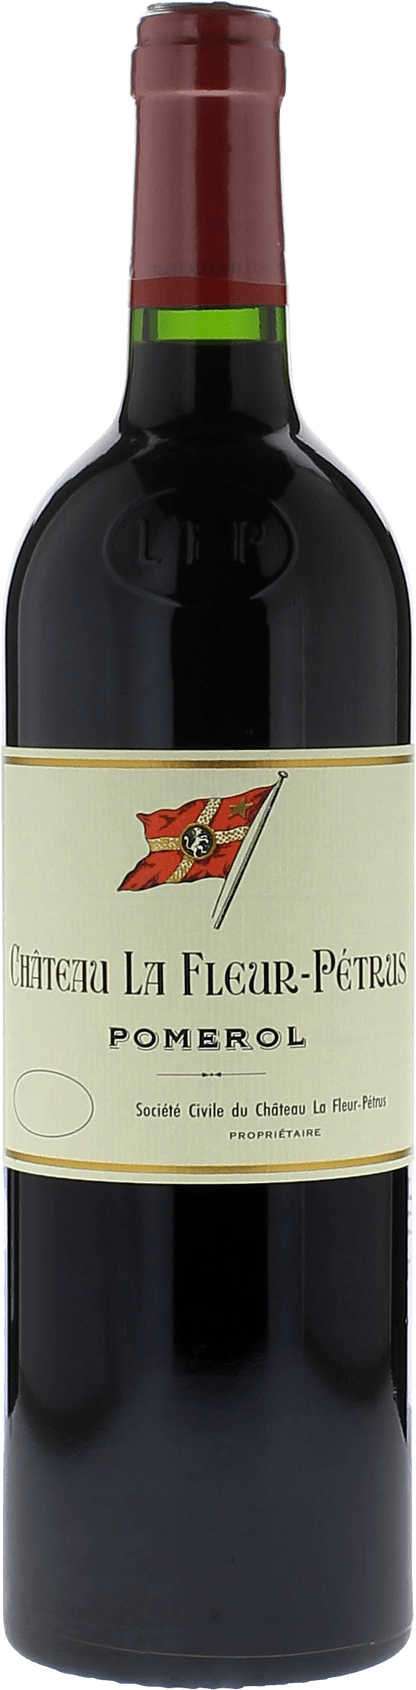 La fleur petrus 1982  Pomerol, Bordeaux rouge